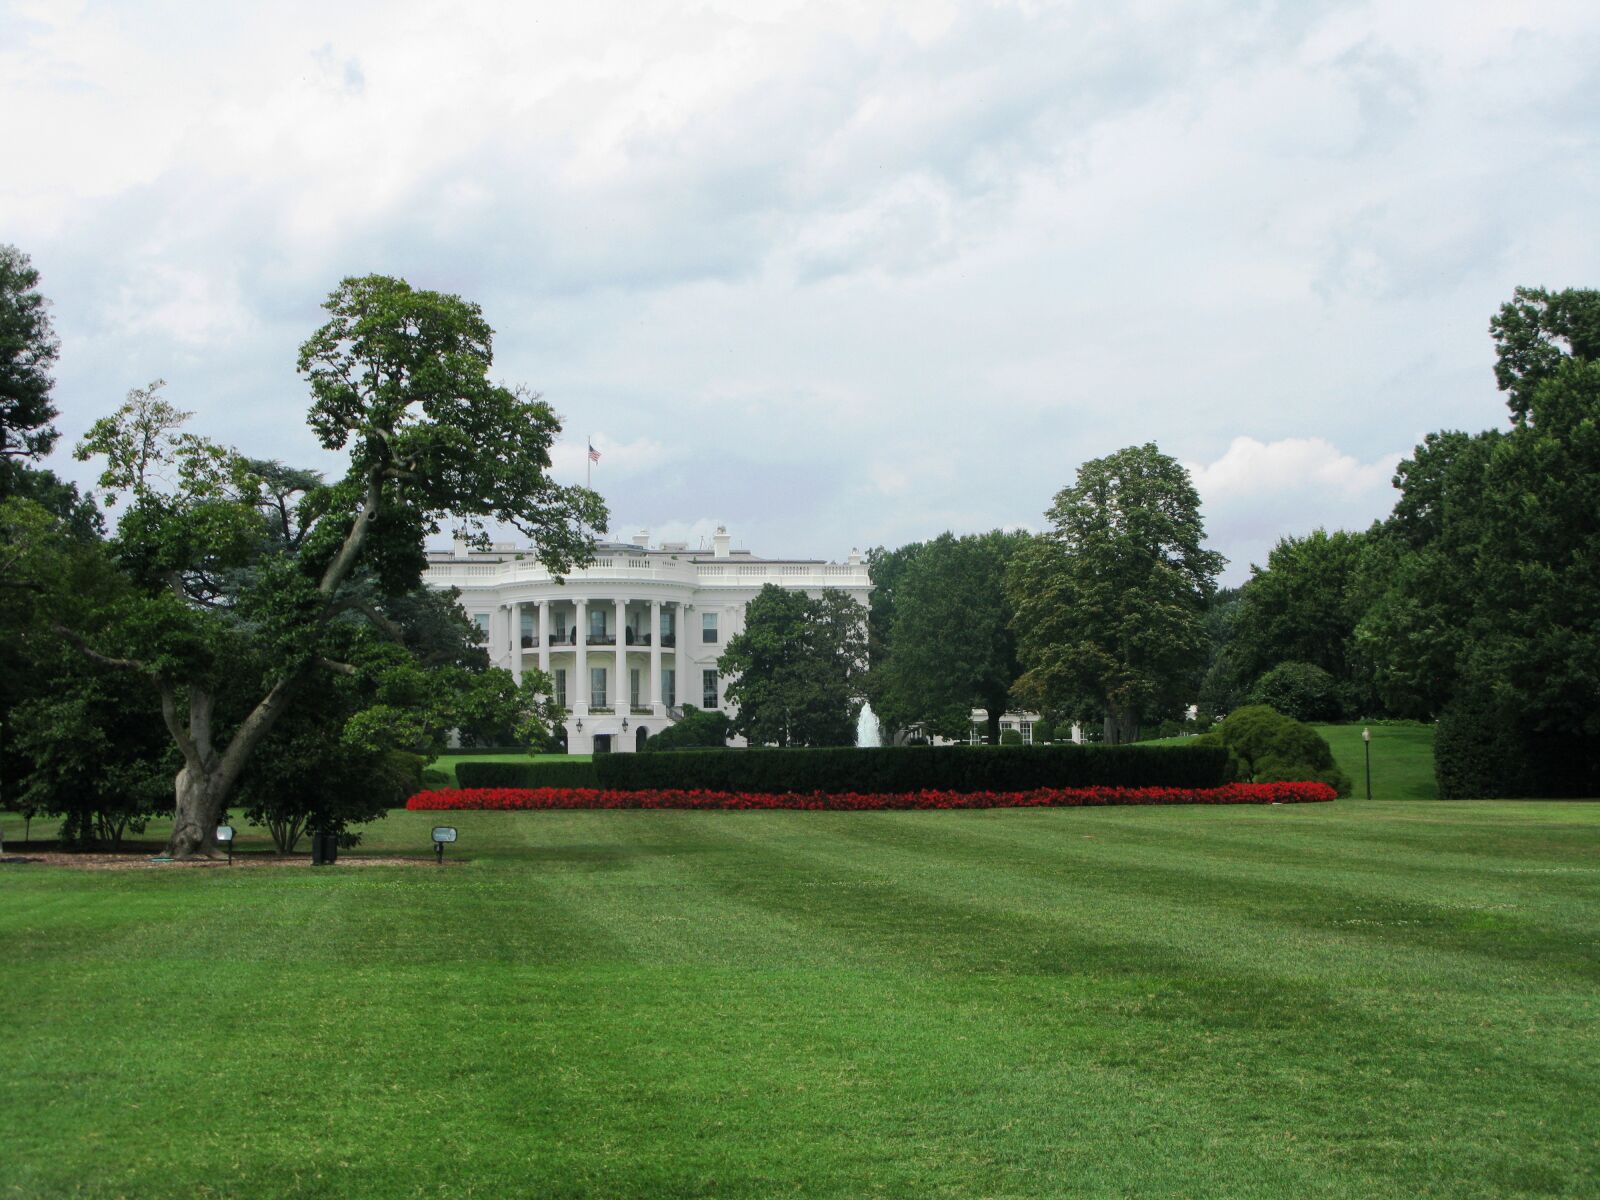 Canon POWERSHOT G9 sample photo. Washington, white house, dc photography